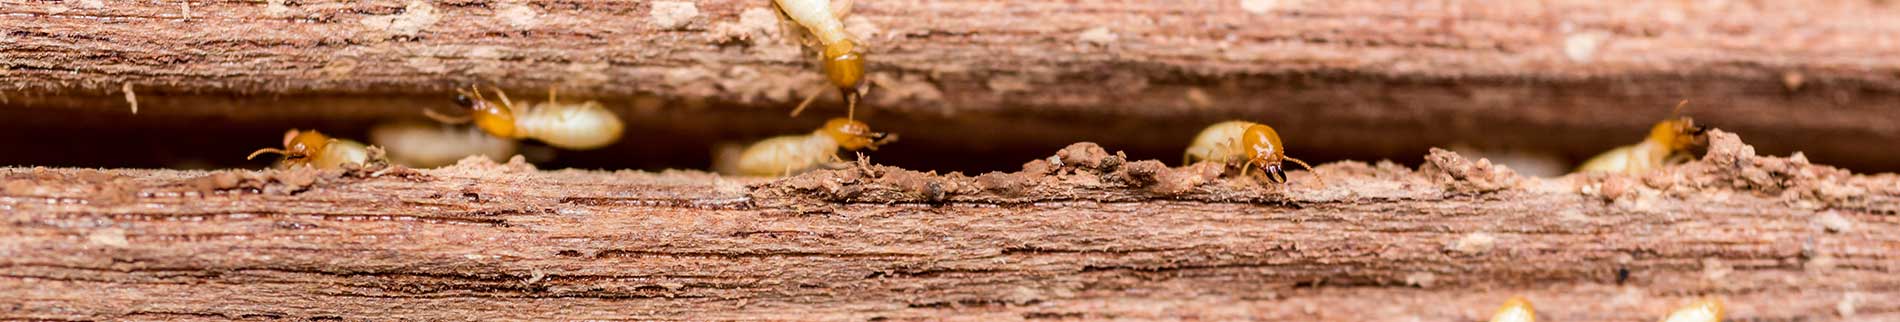 Termites